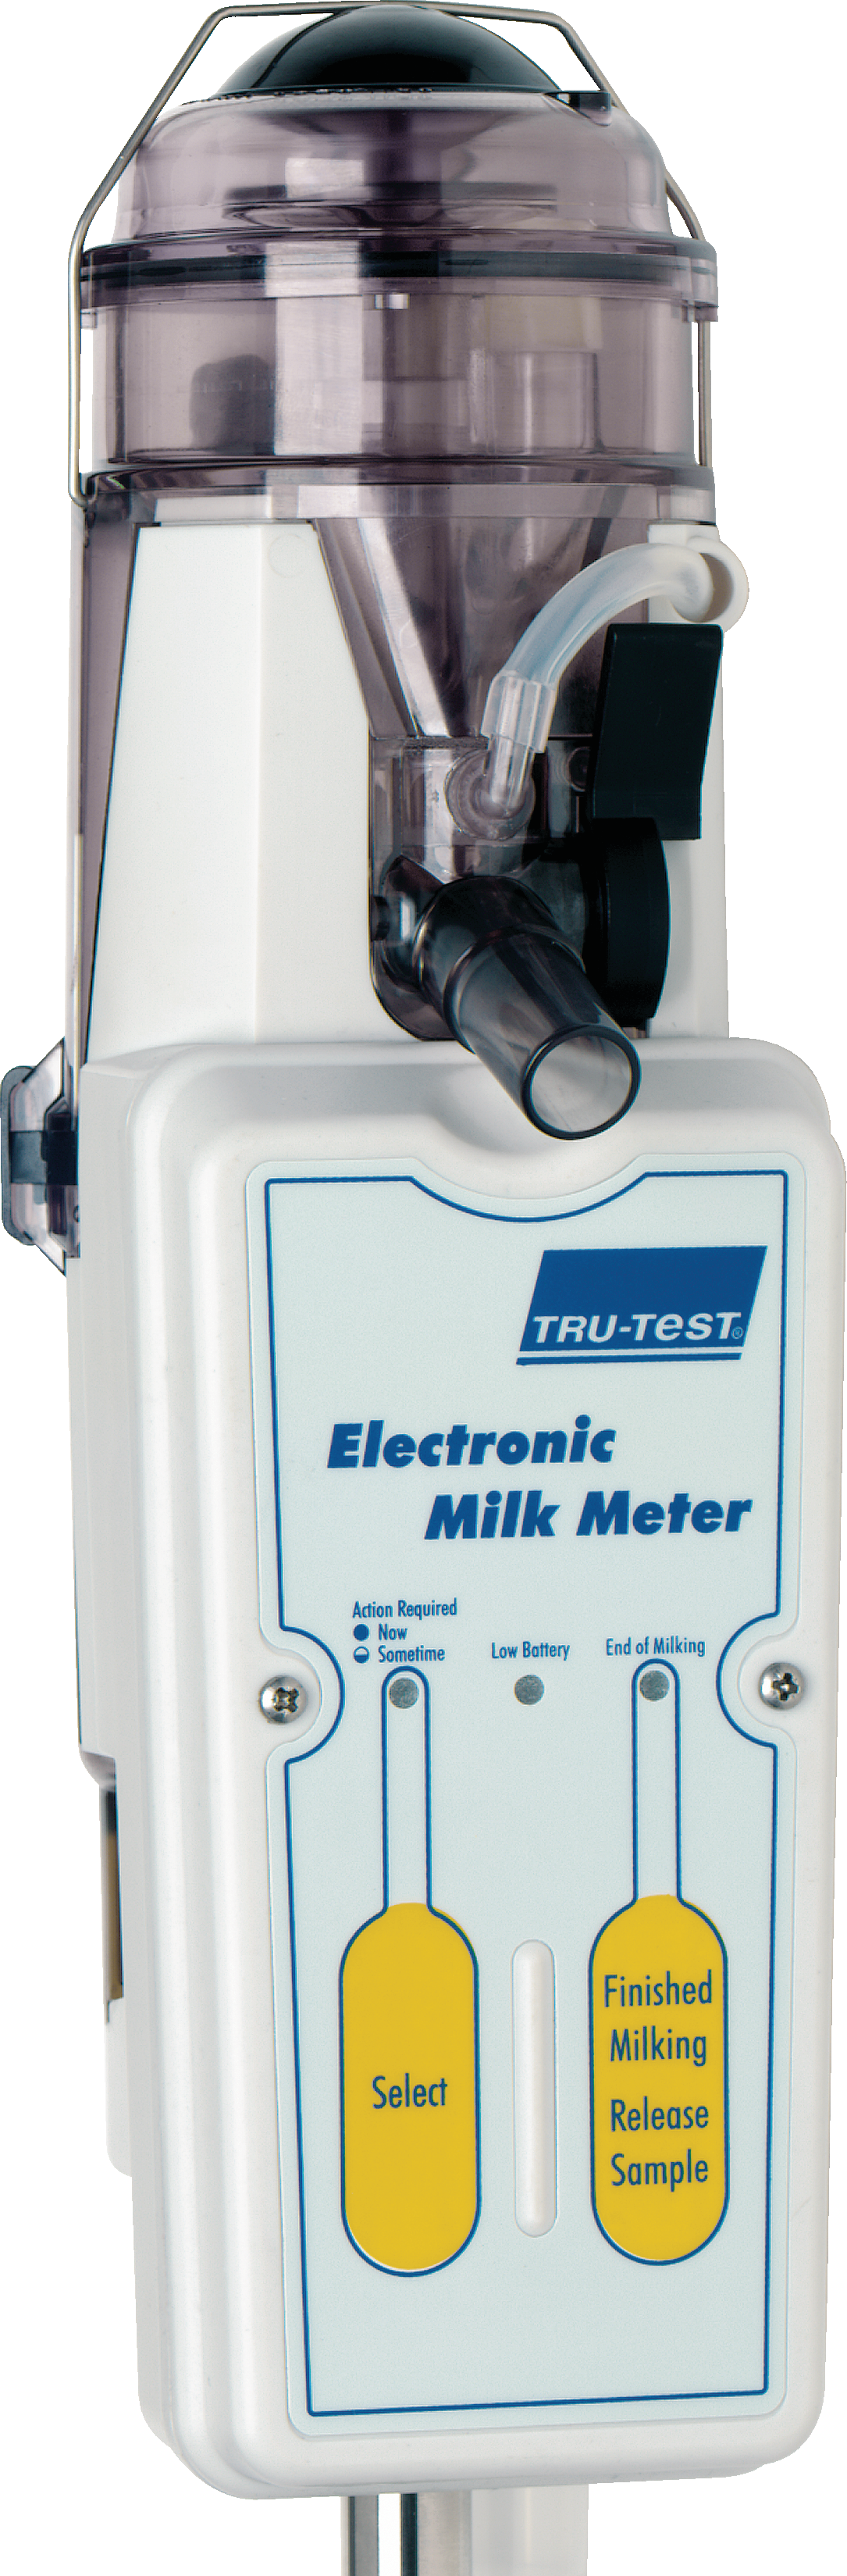 Electronic Milk Meter